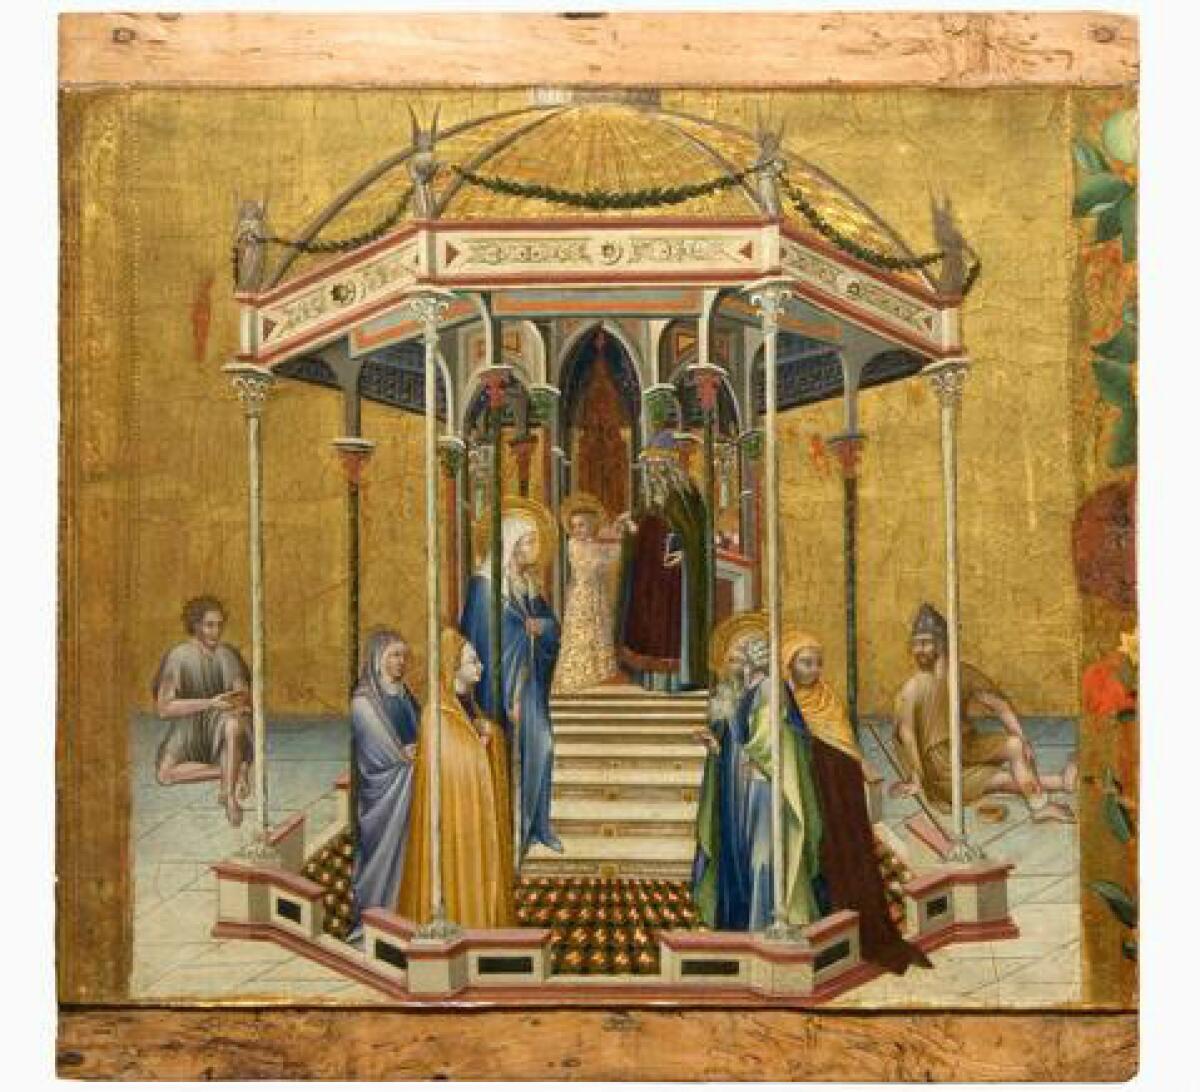 Giovanni di Paolo, "The Presentation in the Temple," 1427, temper and gold on panel. (Pinacoteca Nazionale di Siena)